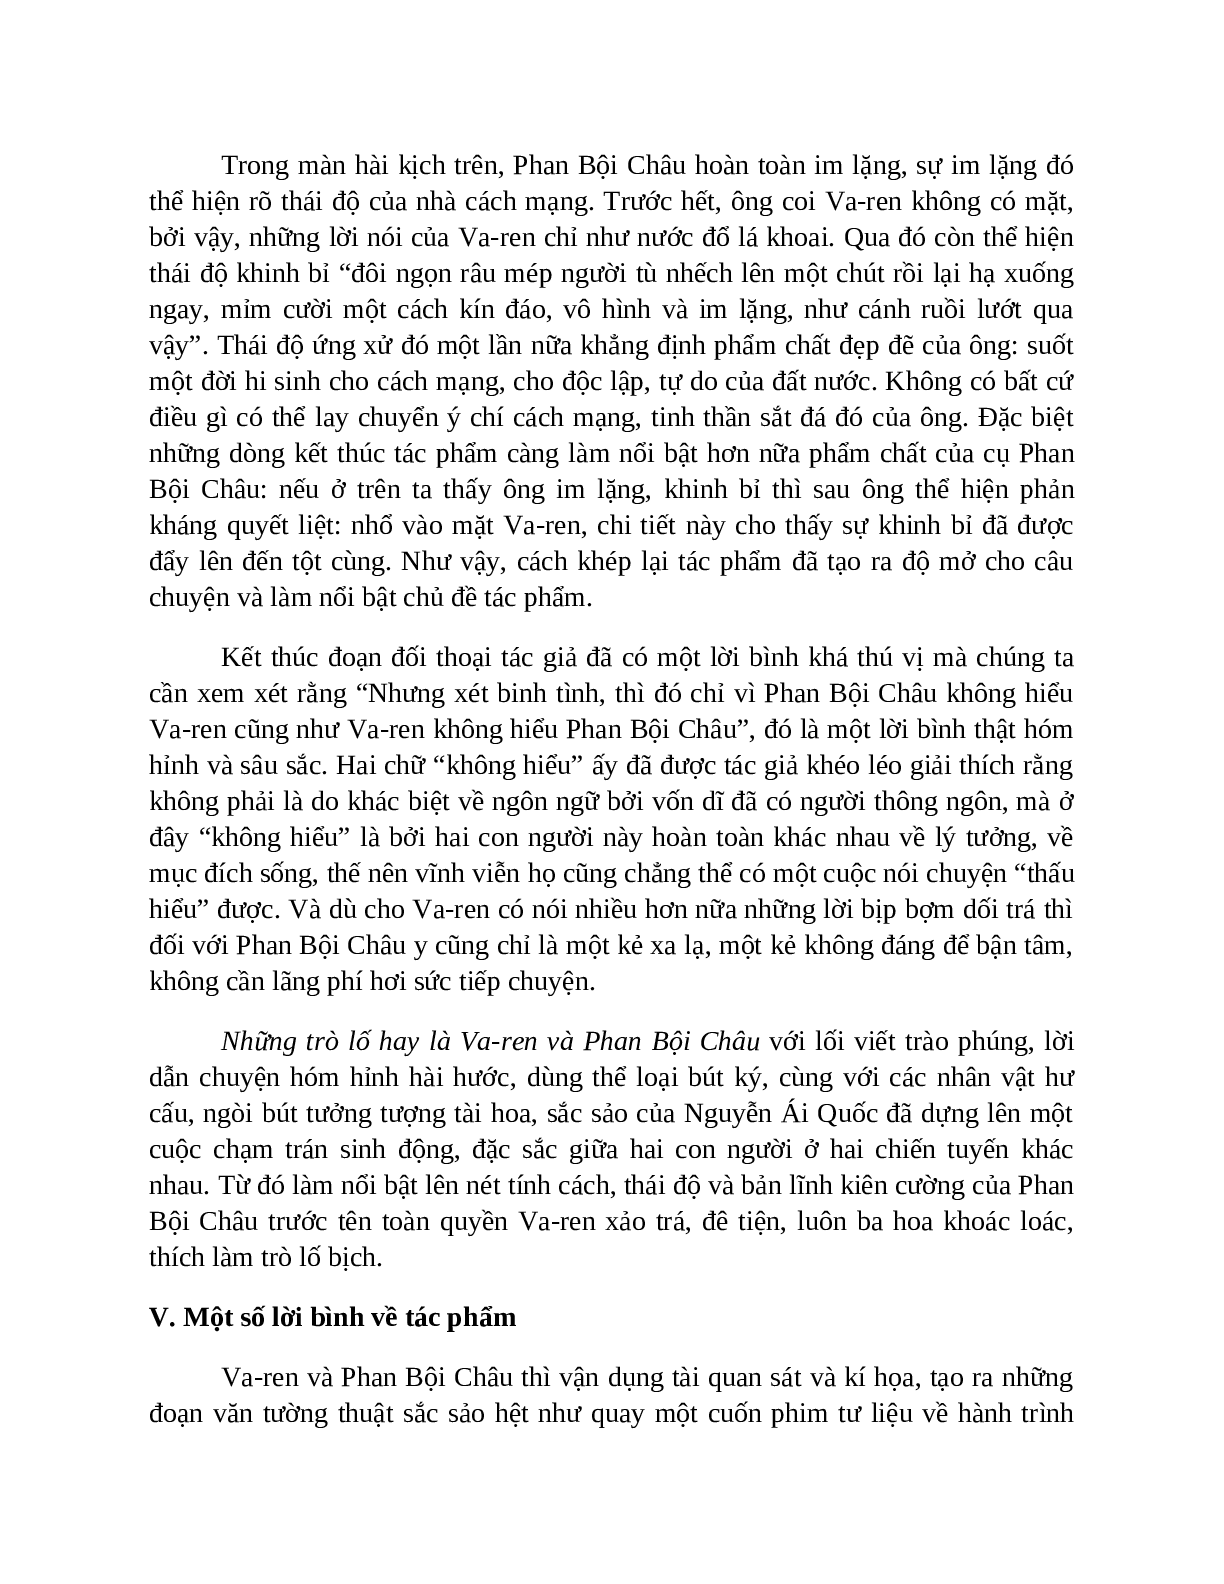 Sơ đồ tư duy bài Những trò lố hay là Varen và Phan Bội Châu dễ nhớ, ngắn nhất - Ngữ văn lớp 7 (trang 7)